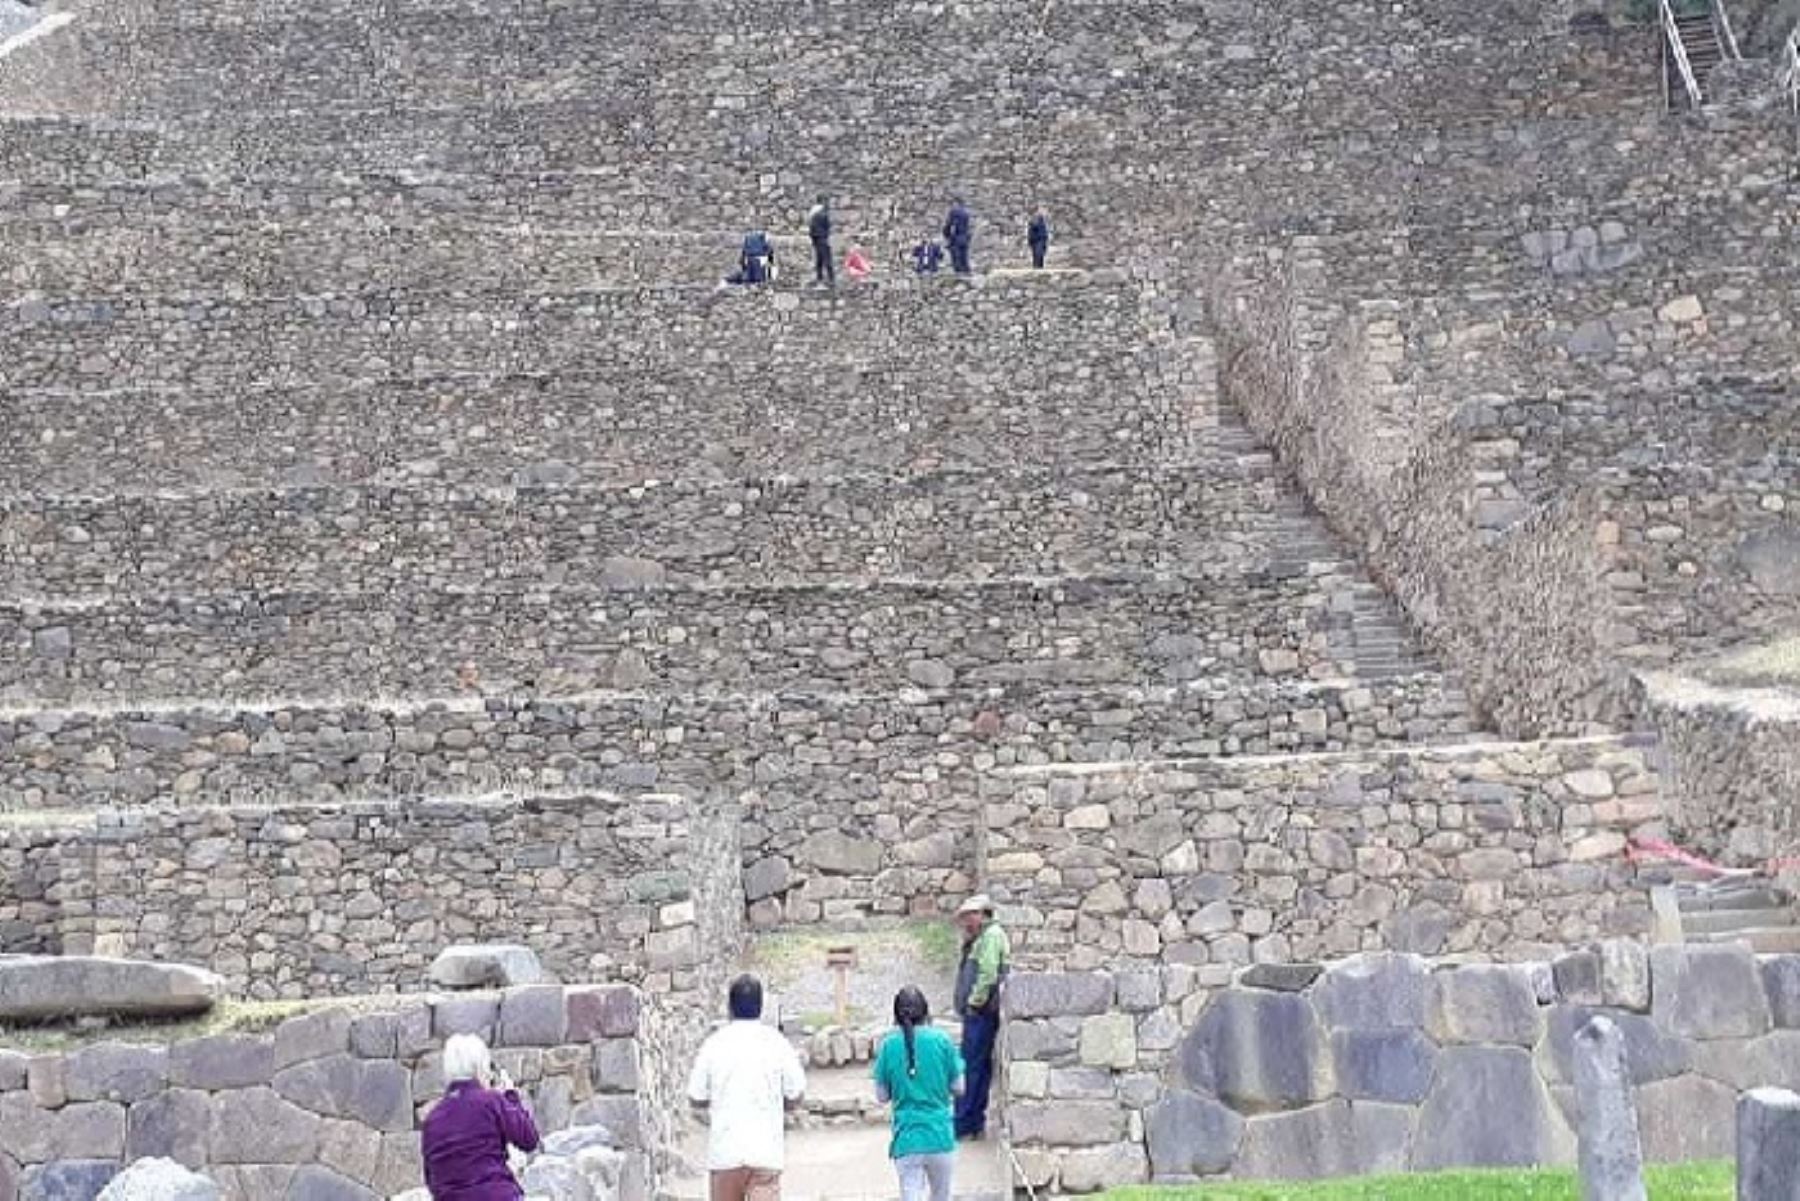 El turista norteamericano Jhon Benjamín Carmichael, de 62 años de edad, falleció este mediodía cuando ascendía hacia la parte alta del conjunto arqueológico de Ollantaytambo, en la región Cusco.